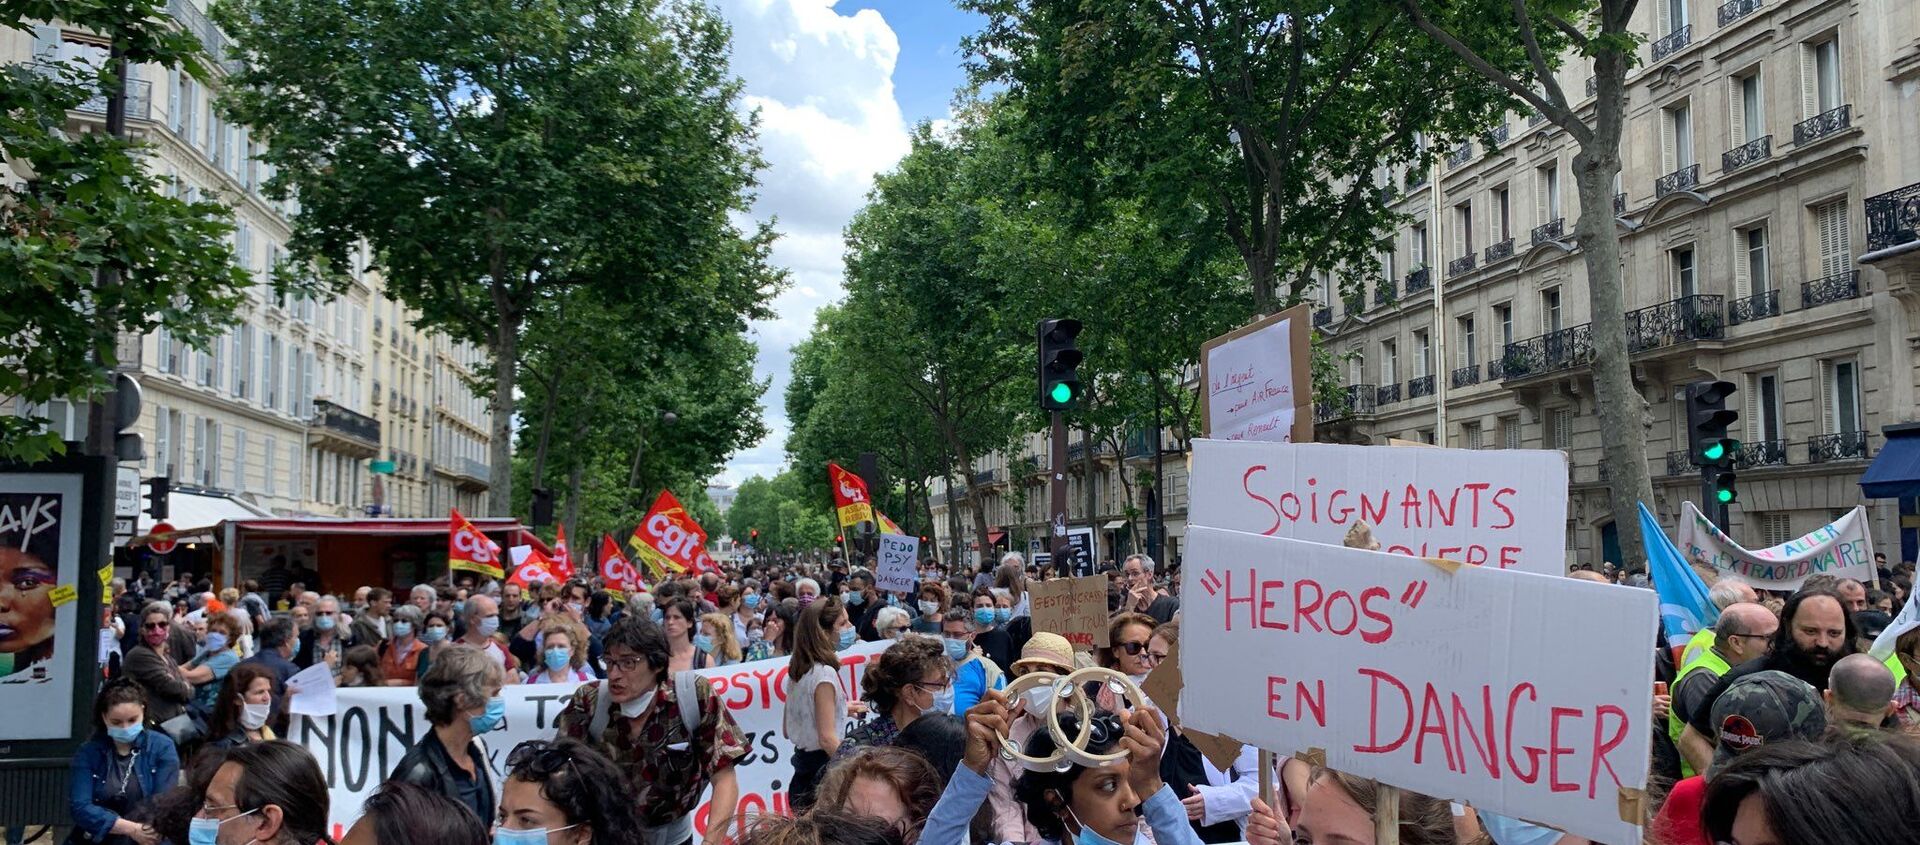 مظاهرات الأطباء يطالبون بتحسين شروط العمل في باريس، فرنسا 16 يونيو 2020 - سبوتنيك عربي, 1920, 12.09.2021